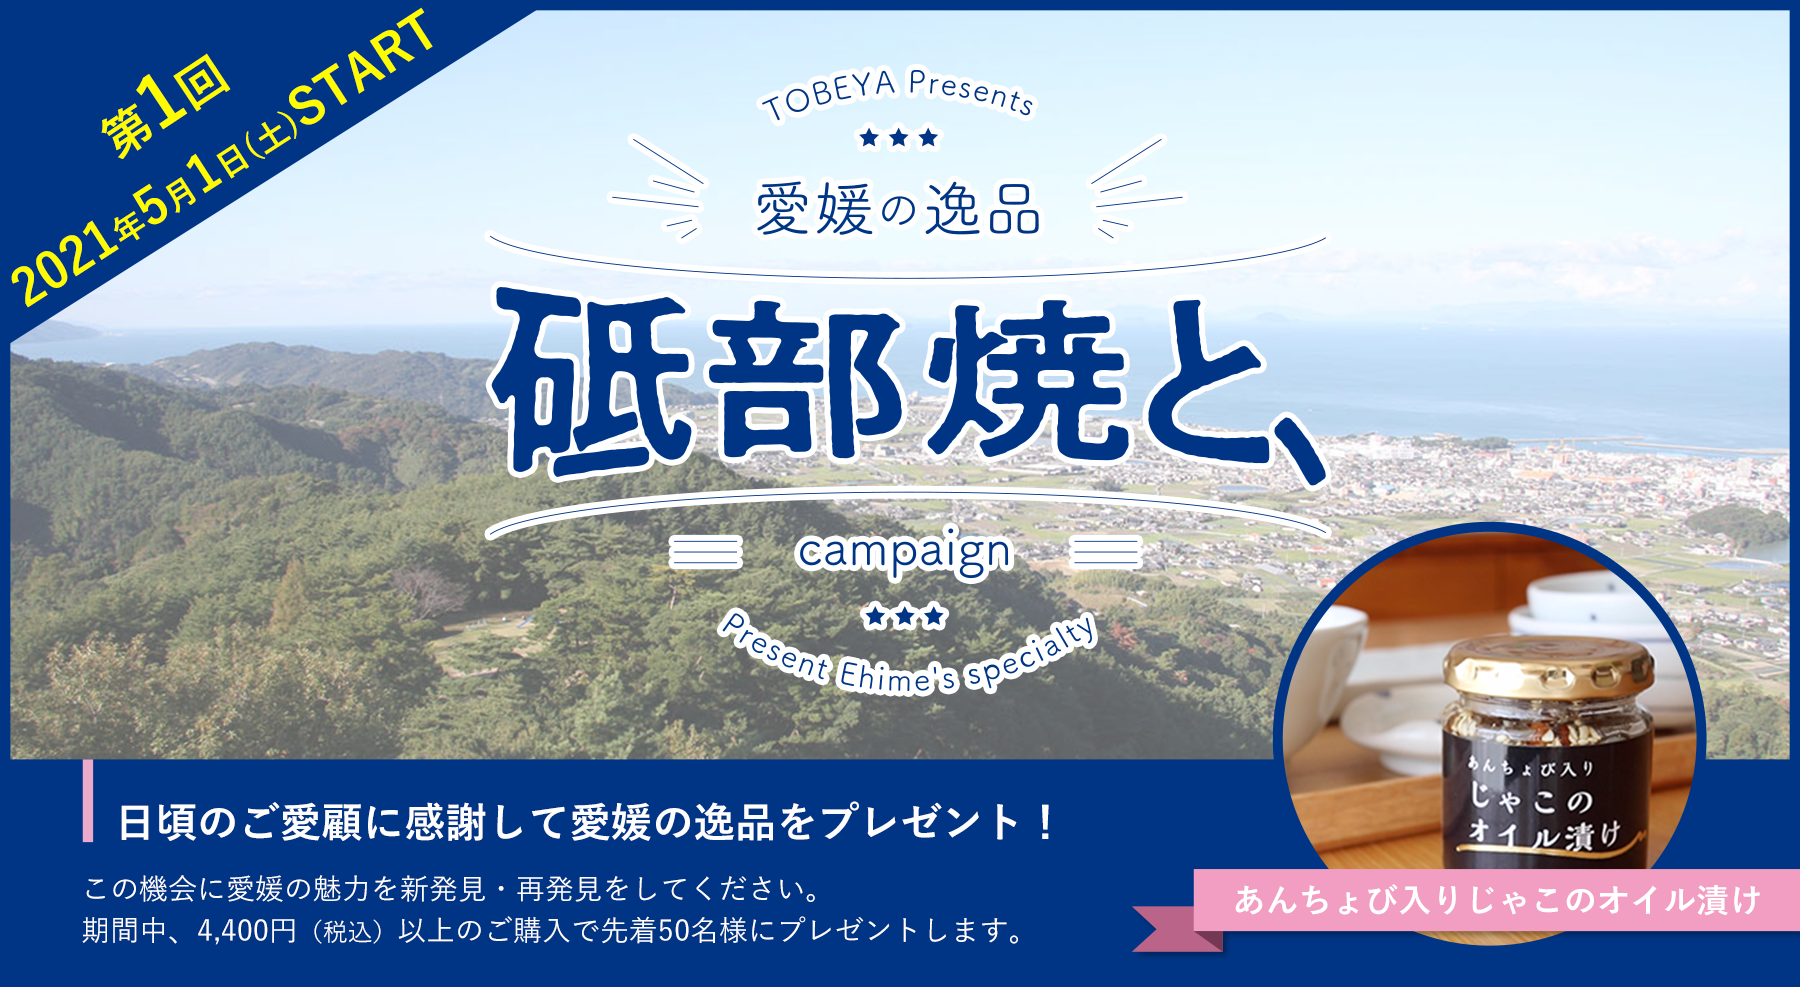 【5月31日終了】「砥部焼と、」”愛媛の逸品”プレゼントキャンペーンを開催します（第1弾：2021年5月1日(土)〜）